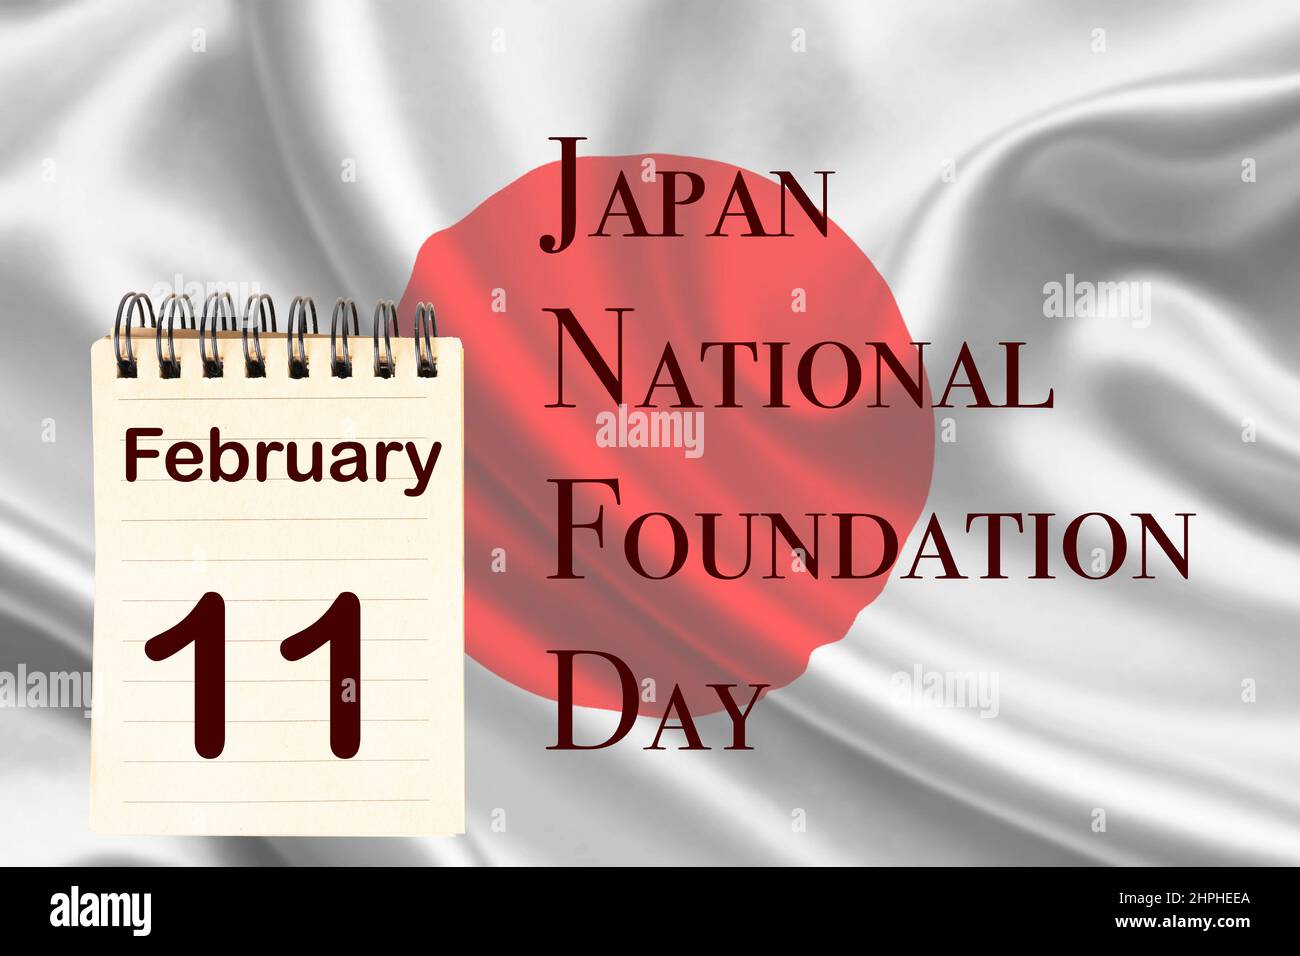 Die Feier des Japan National Foundation Day mit der Japan-Flagge und dem Kalender, der den 11. Februar anzeigt Stockfoto